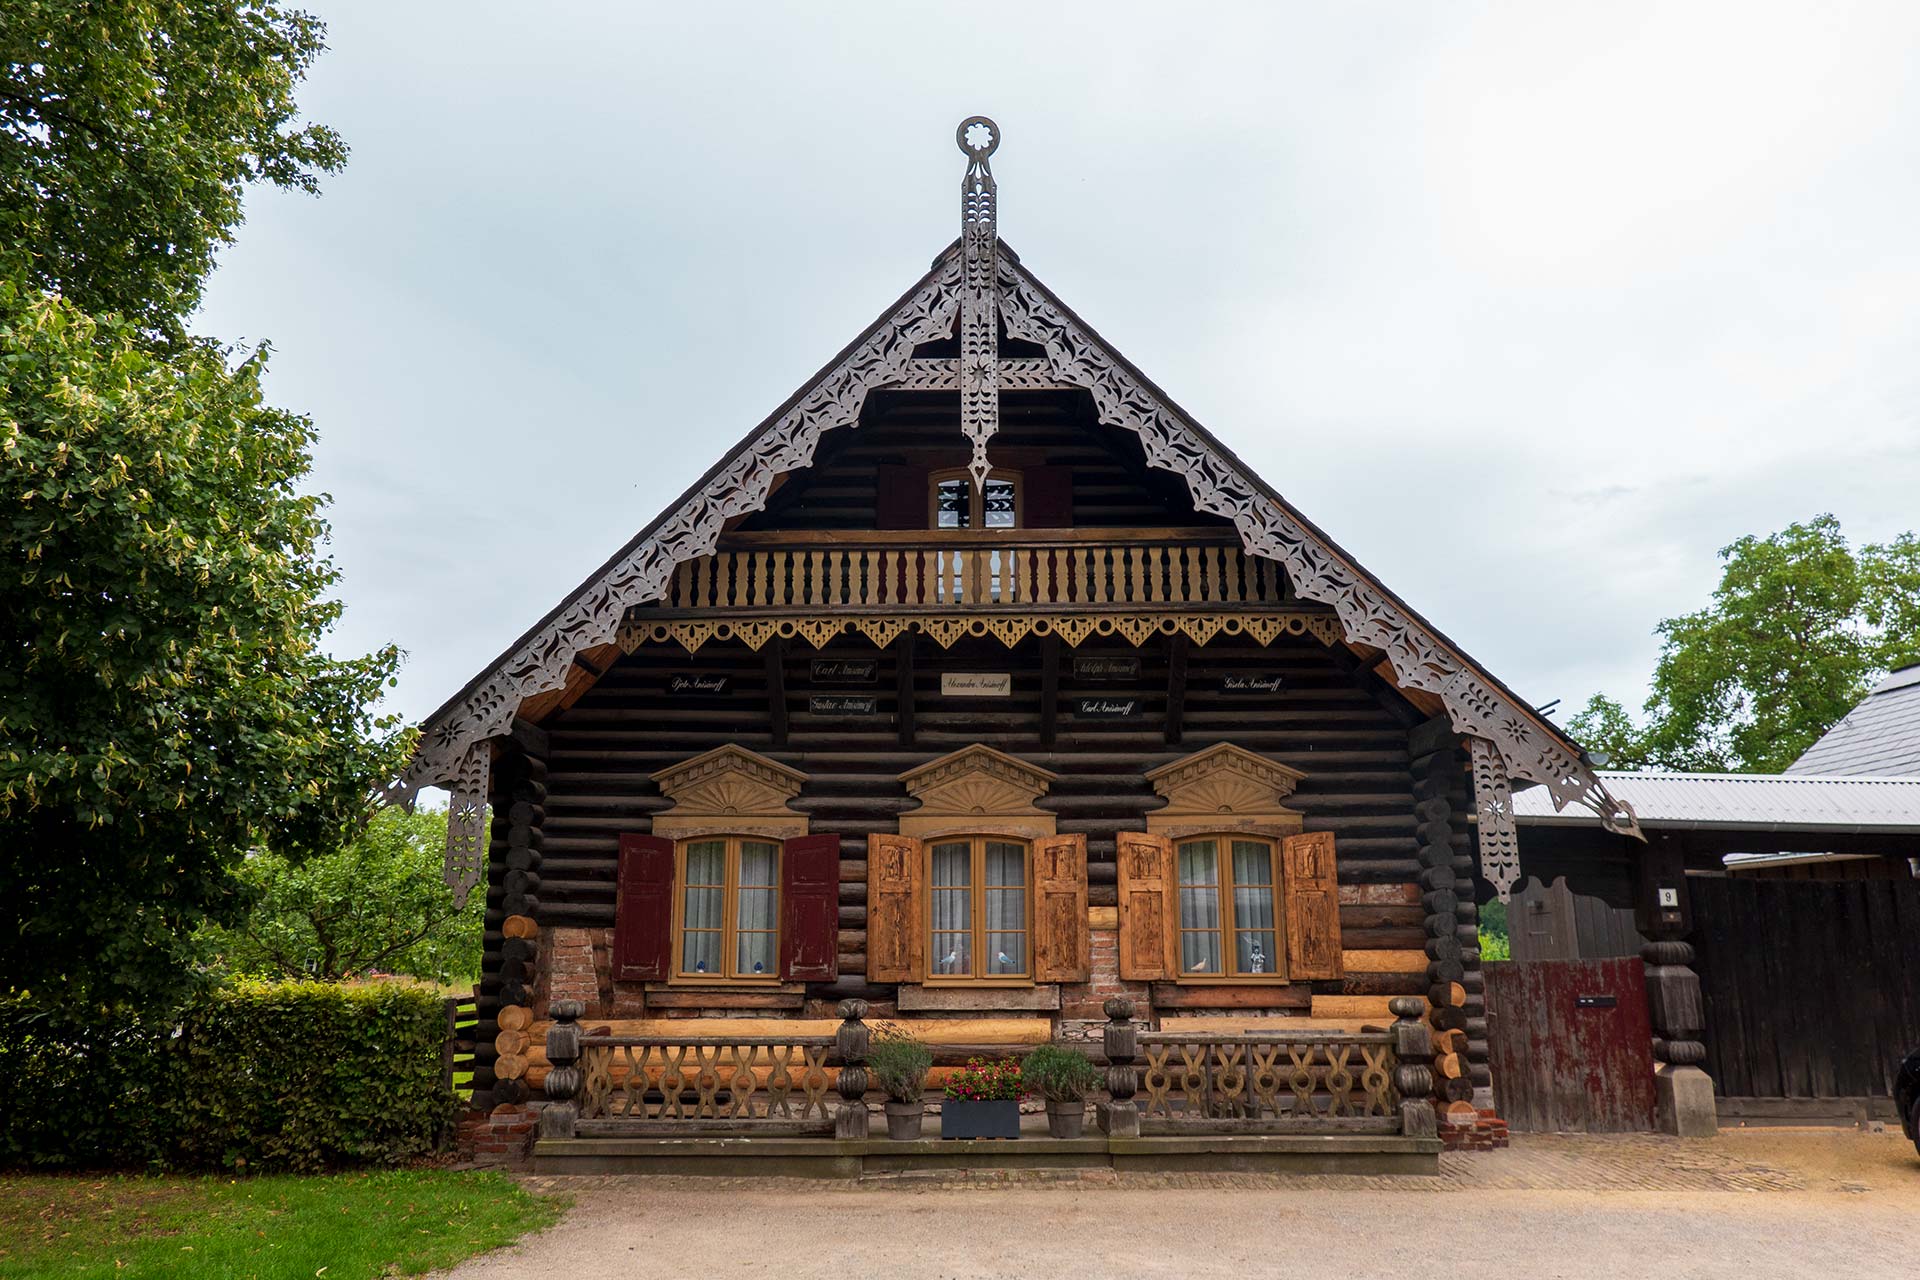 In der Russischen Kolonie Alexandrowka stehen Häuser wie aus dem Märchen der Hexe Baba Jaga.